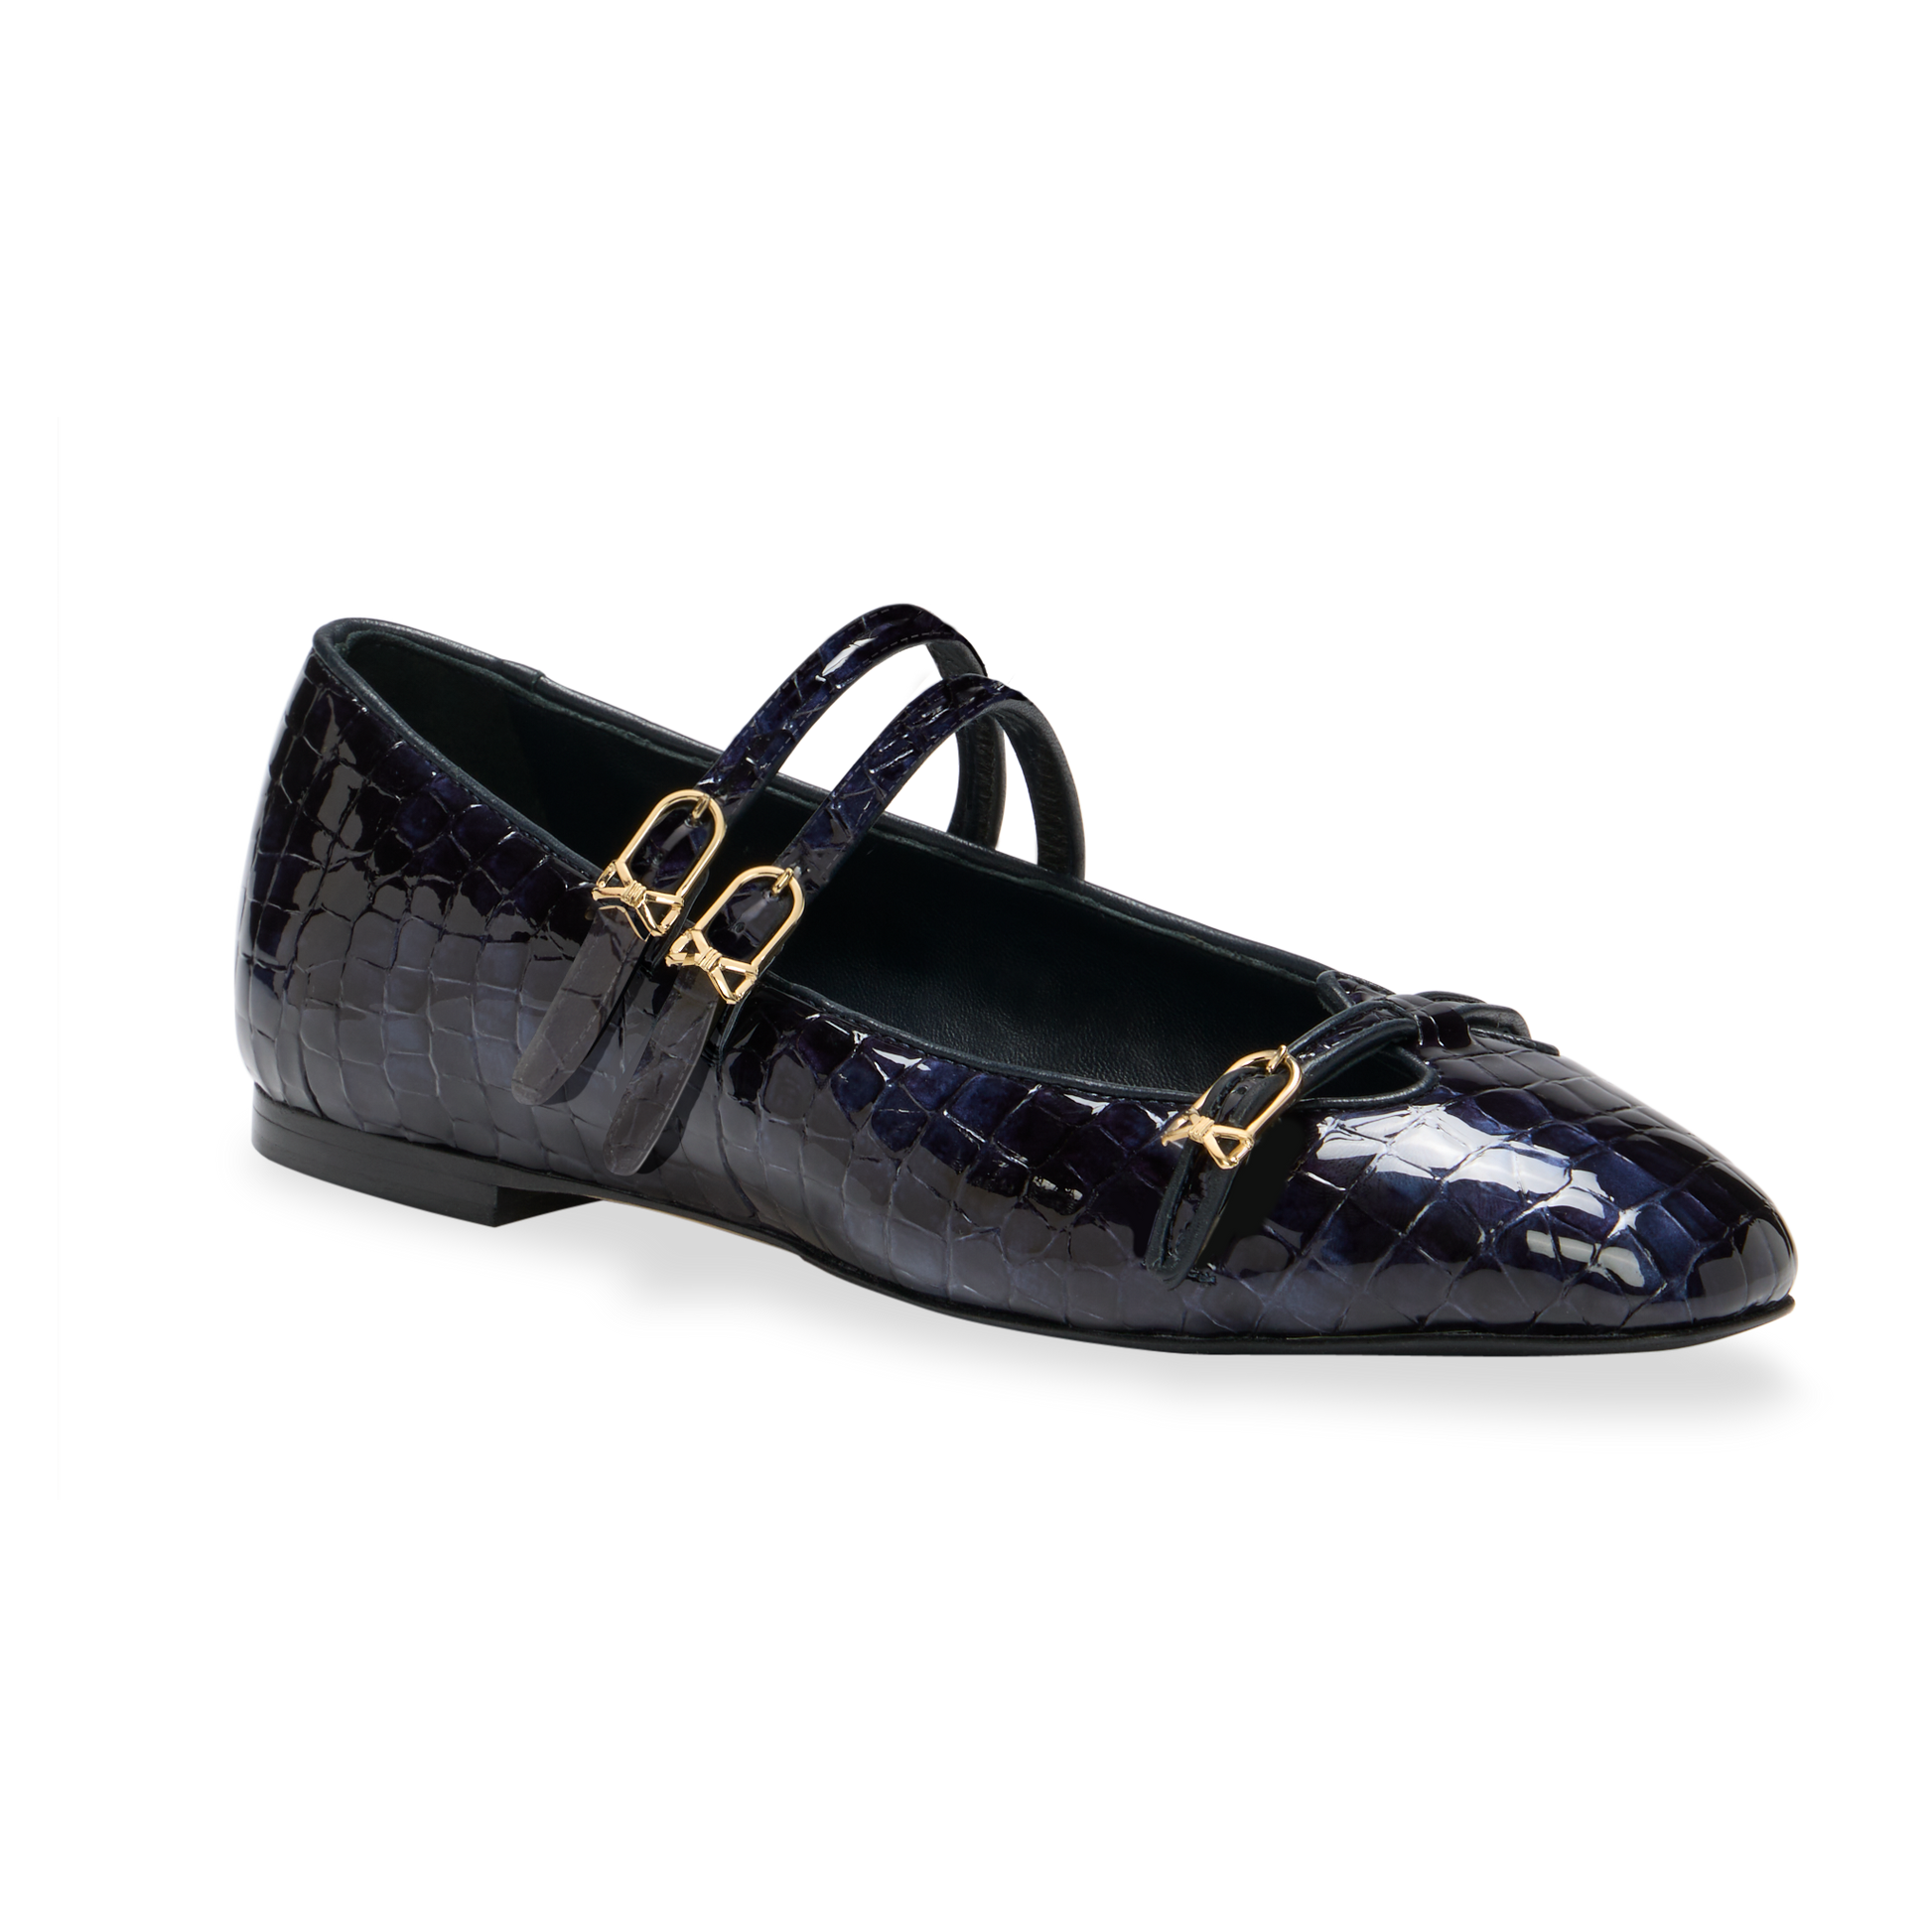 Louis Vuitton Leather Double Strap Mary Jane Pumps - Size 8.5 / 38.5, Louis  Vuitton Shoes